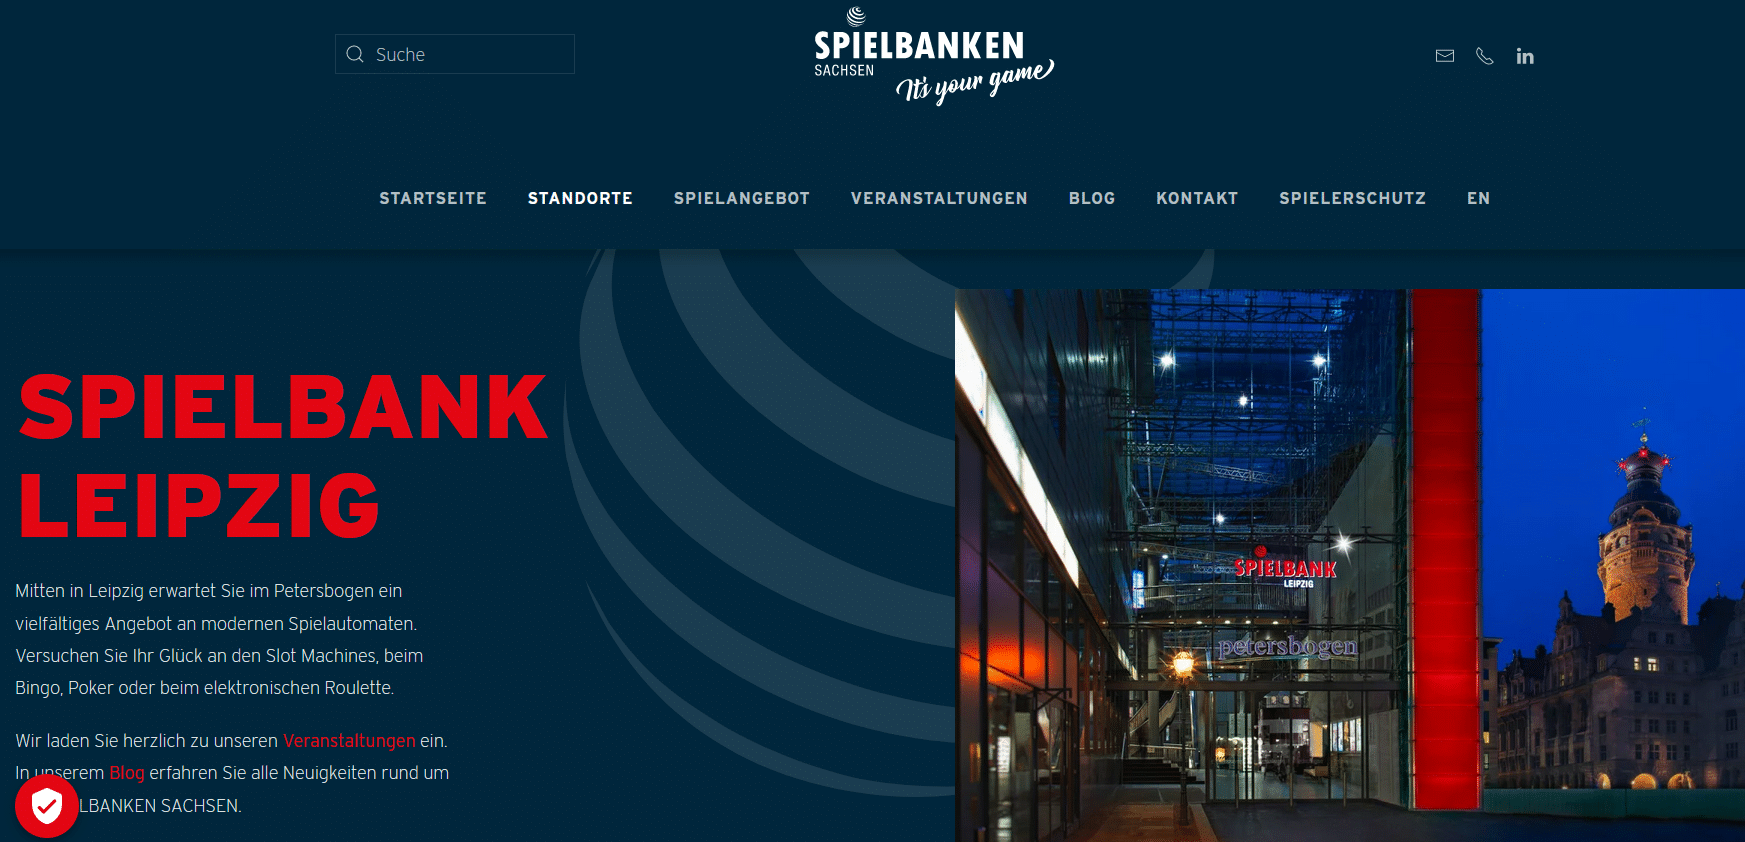 Spielbank Leipzig Petersbogen